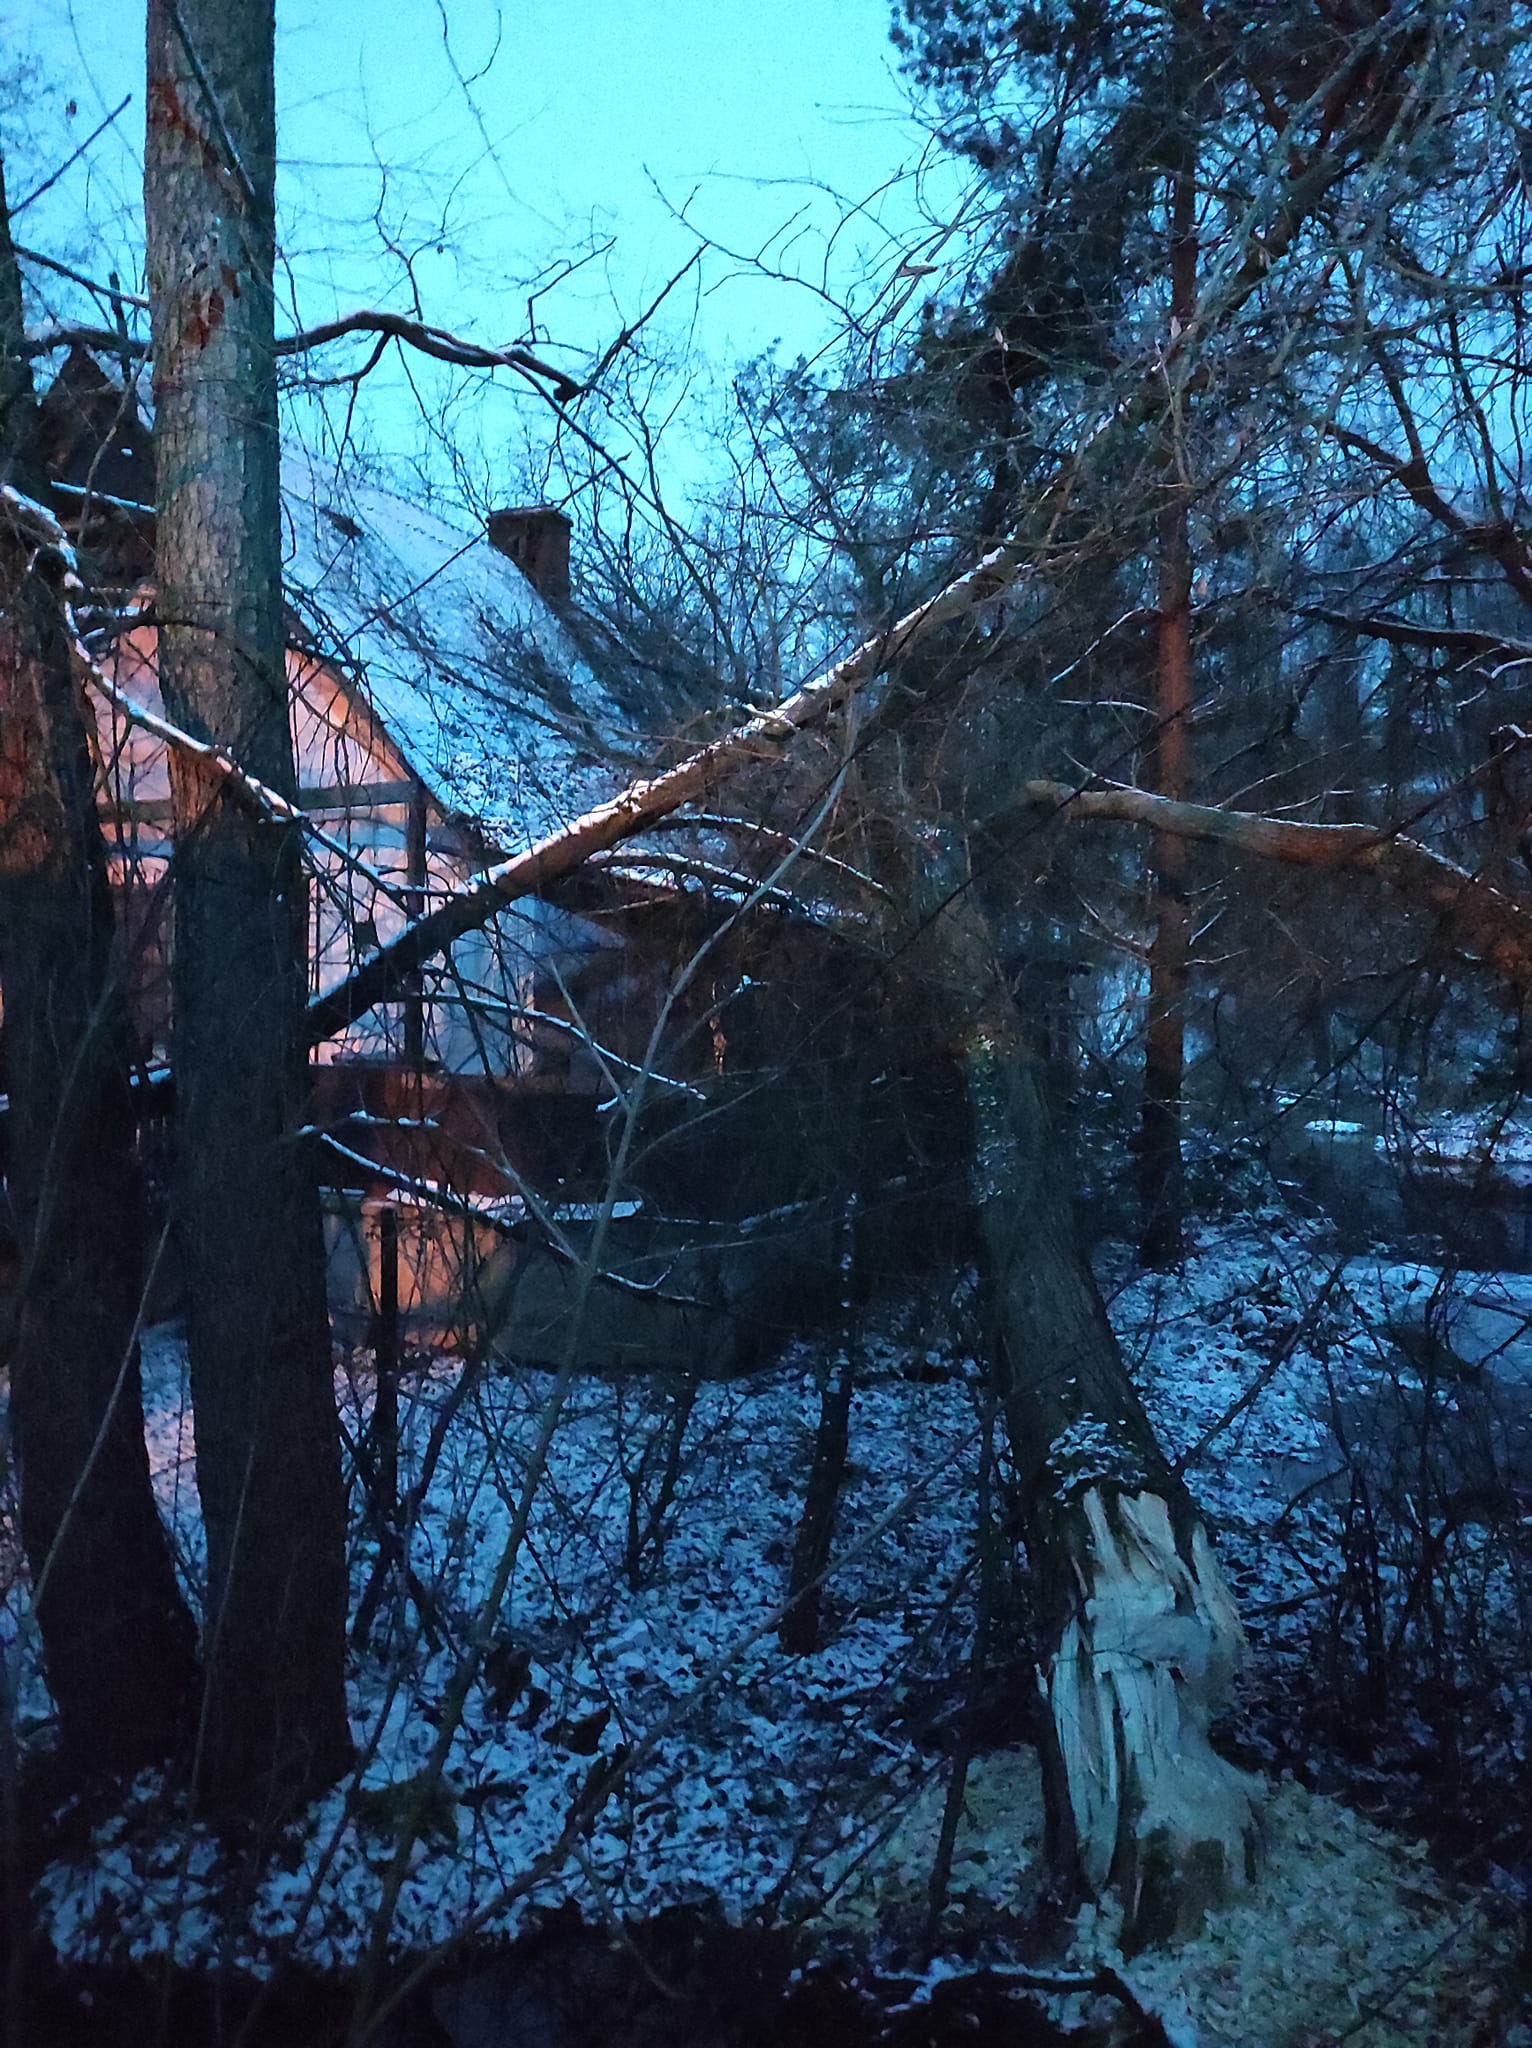 Podgryzione przez bobry drzewo runęło na budynek mieszkalny